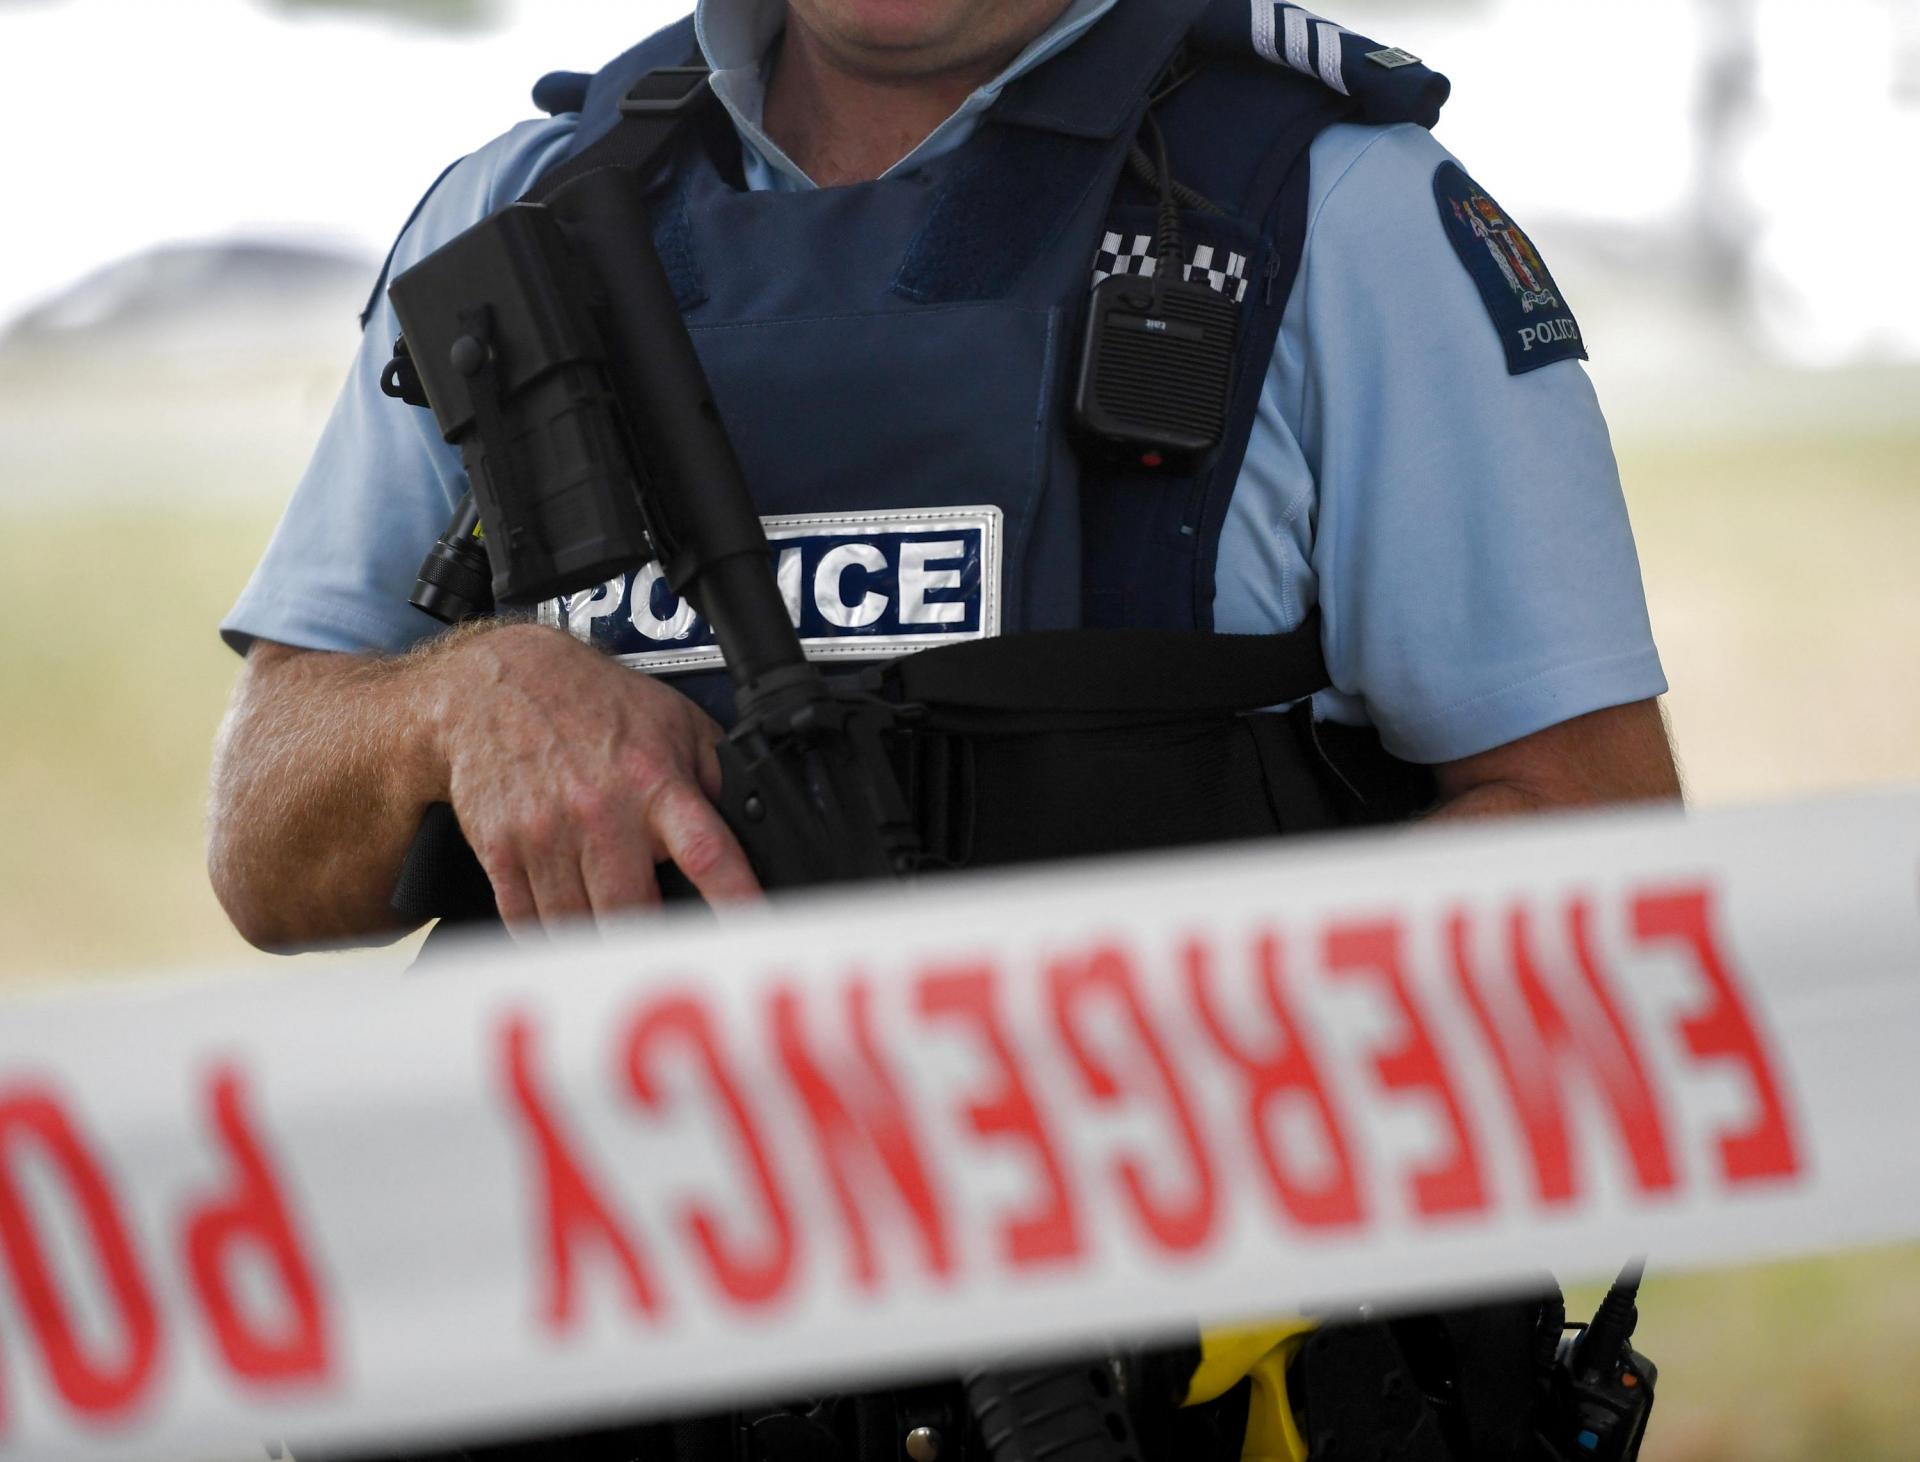 Yangi Zelandiyada olti kishini pichoqlagan hujumchi politsiya tomonidan otib o'ldirilgan